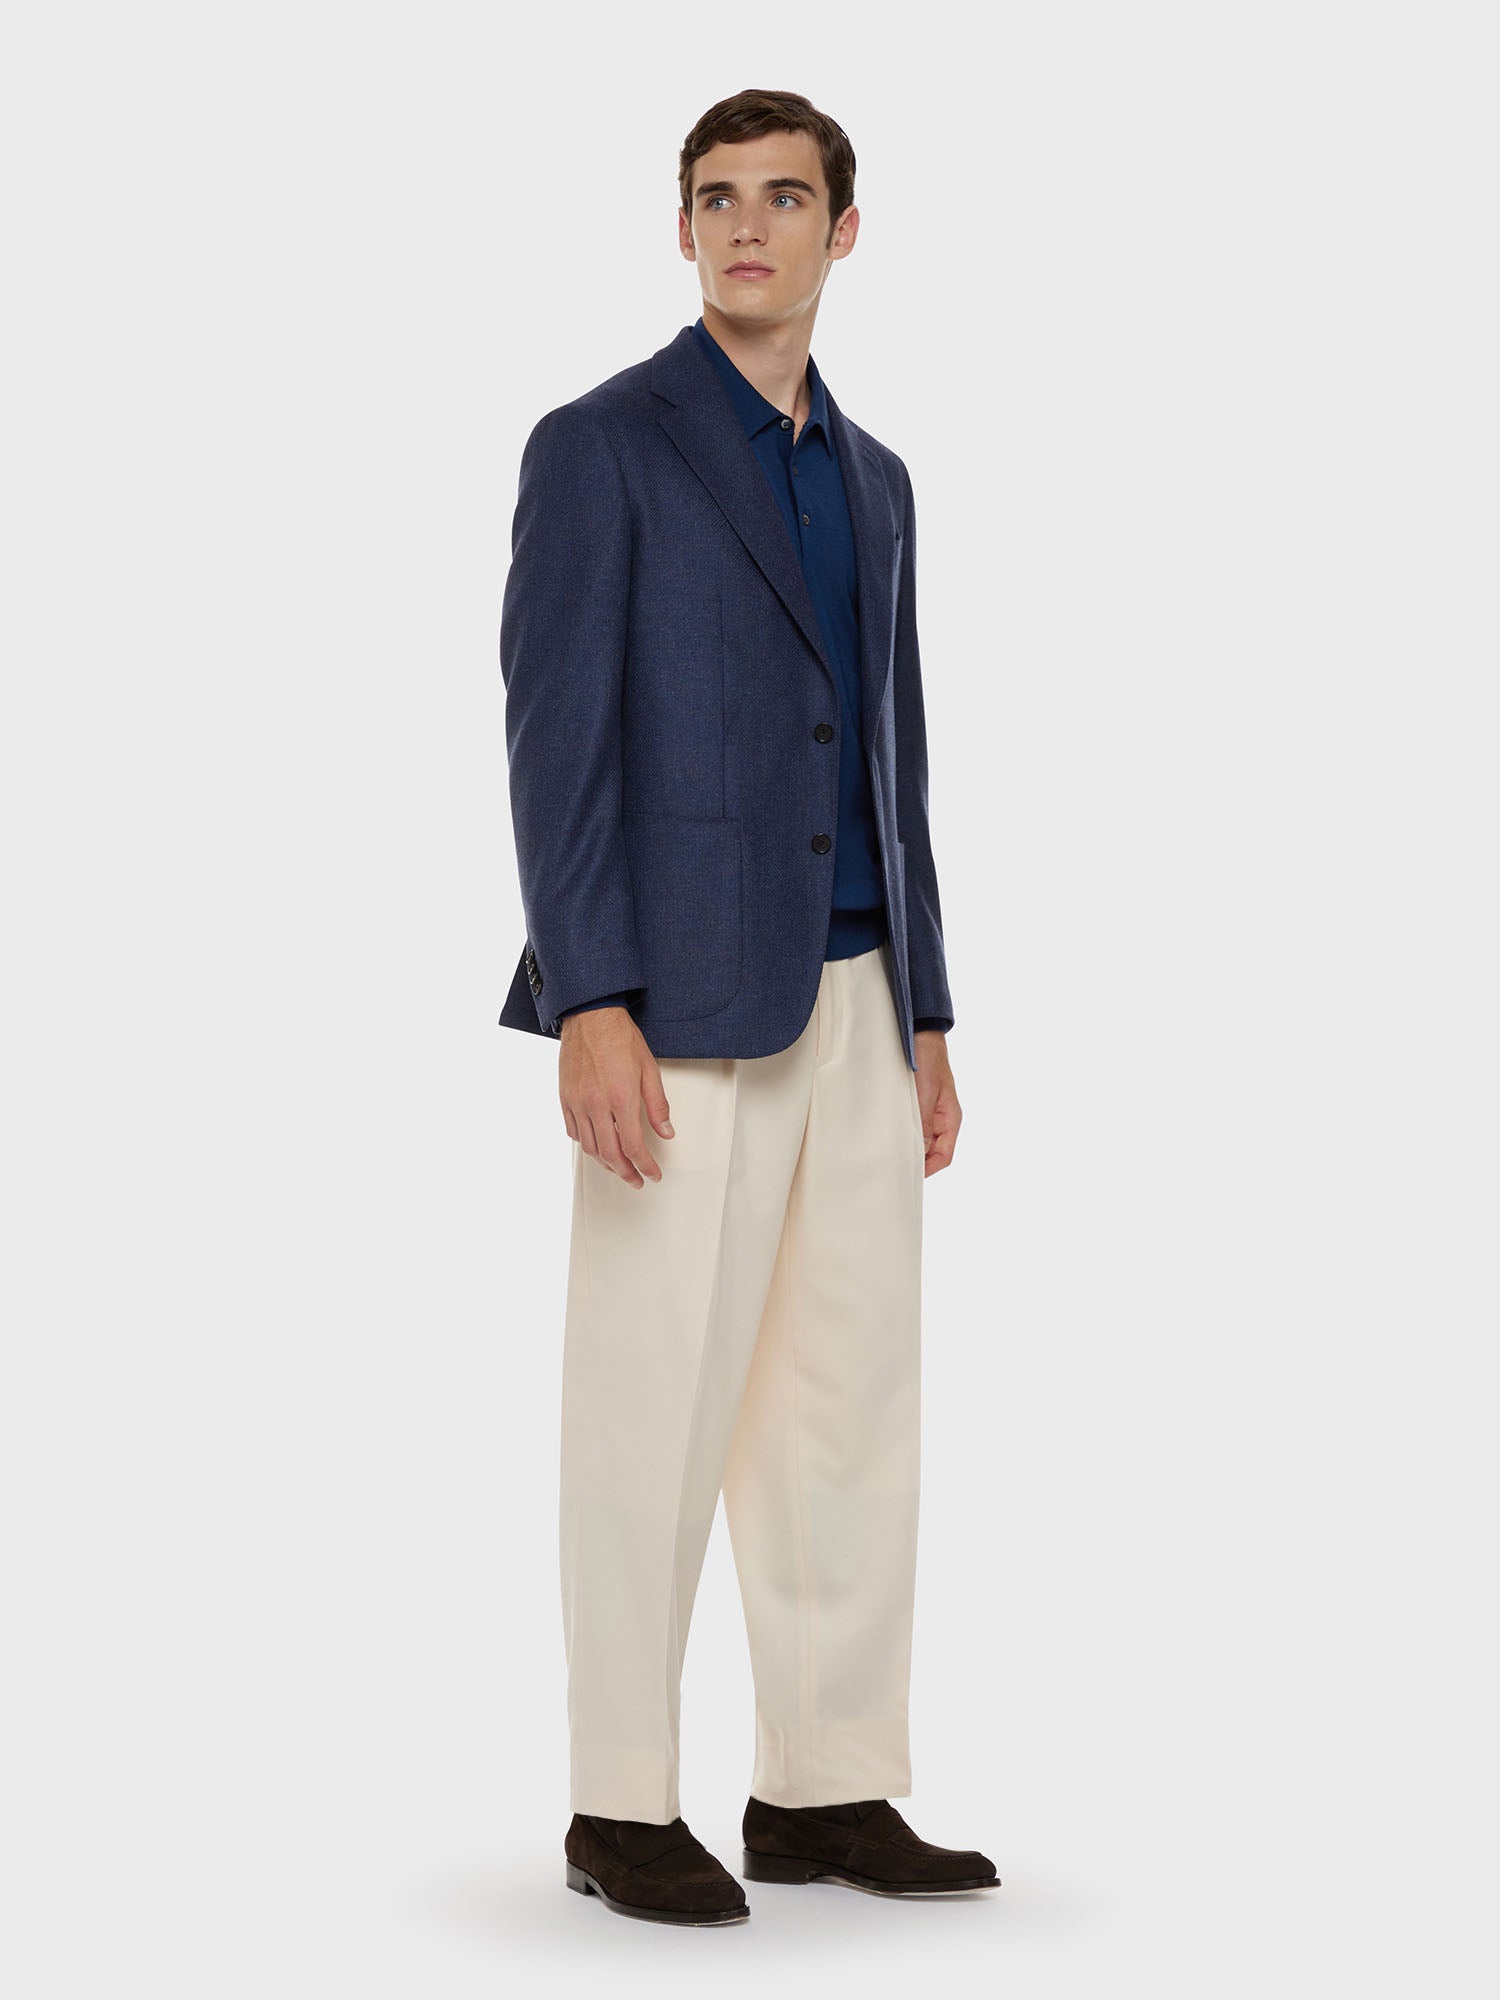 Caruso Menswear Abbigliamento Uomo Polo a maniche lunghe in lana, seta e cashmere blu total look